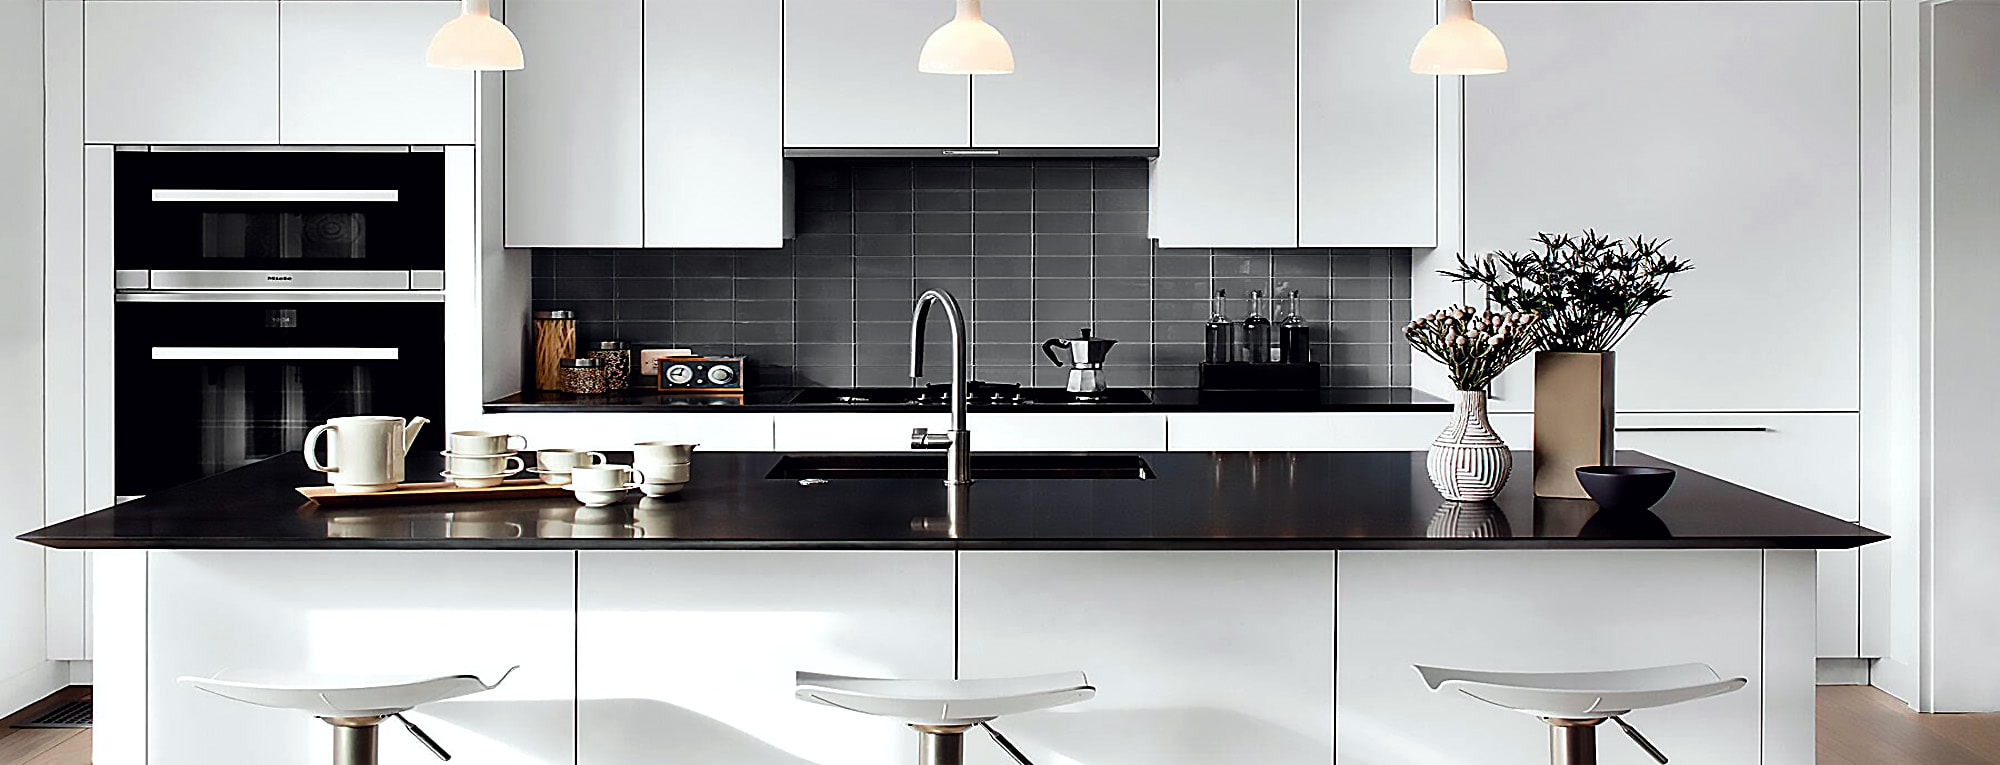 آشپزخانه دیزاین شده با کابینت روکش وکیوم